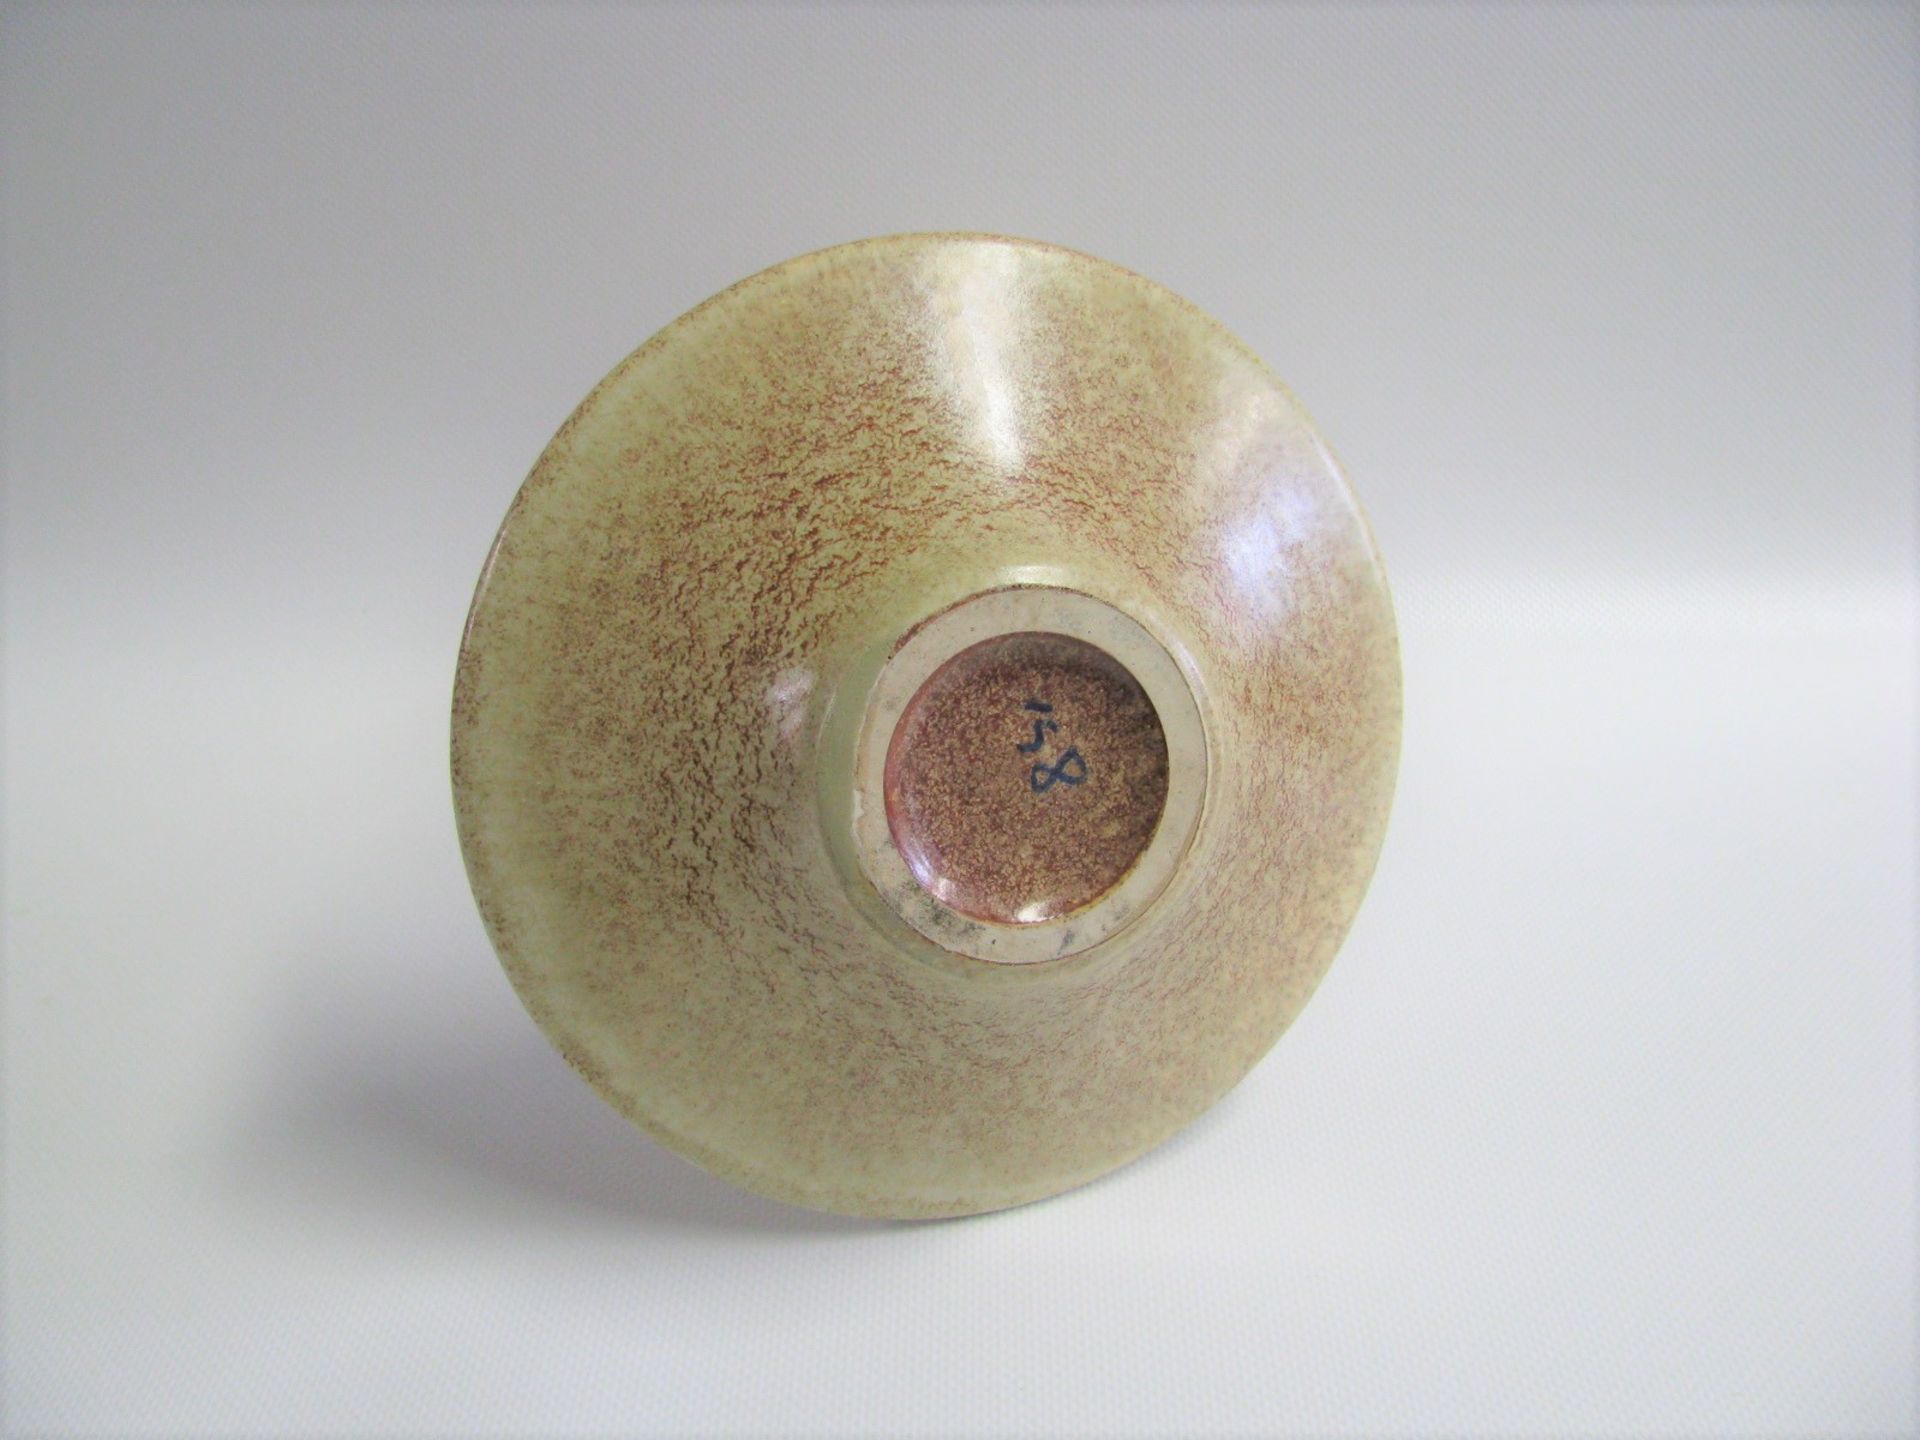 Designer-Vase, Bertoncello Ceramiche D'Arte, Designer Roberto Rigon, Keramik polychrom, glasiert, - Bild 2 aus 2